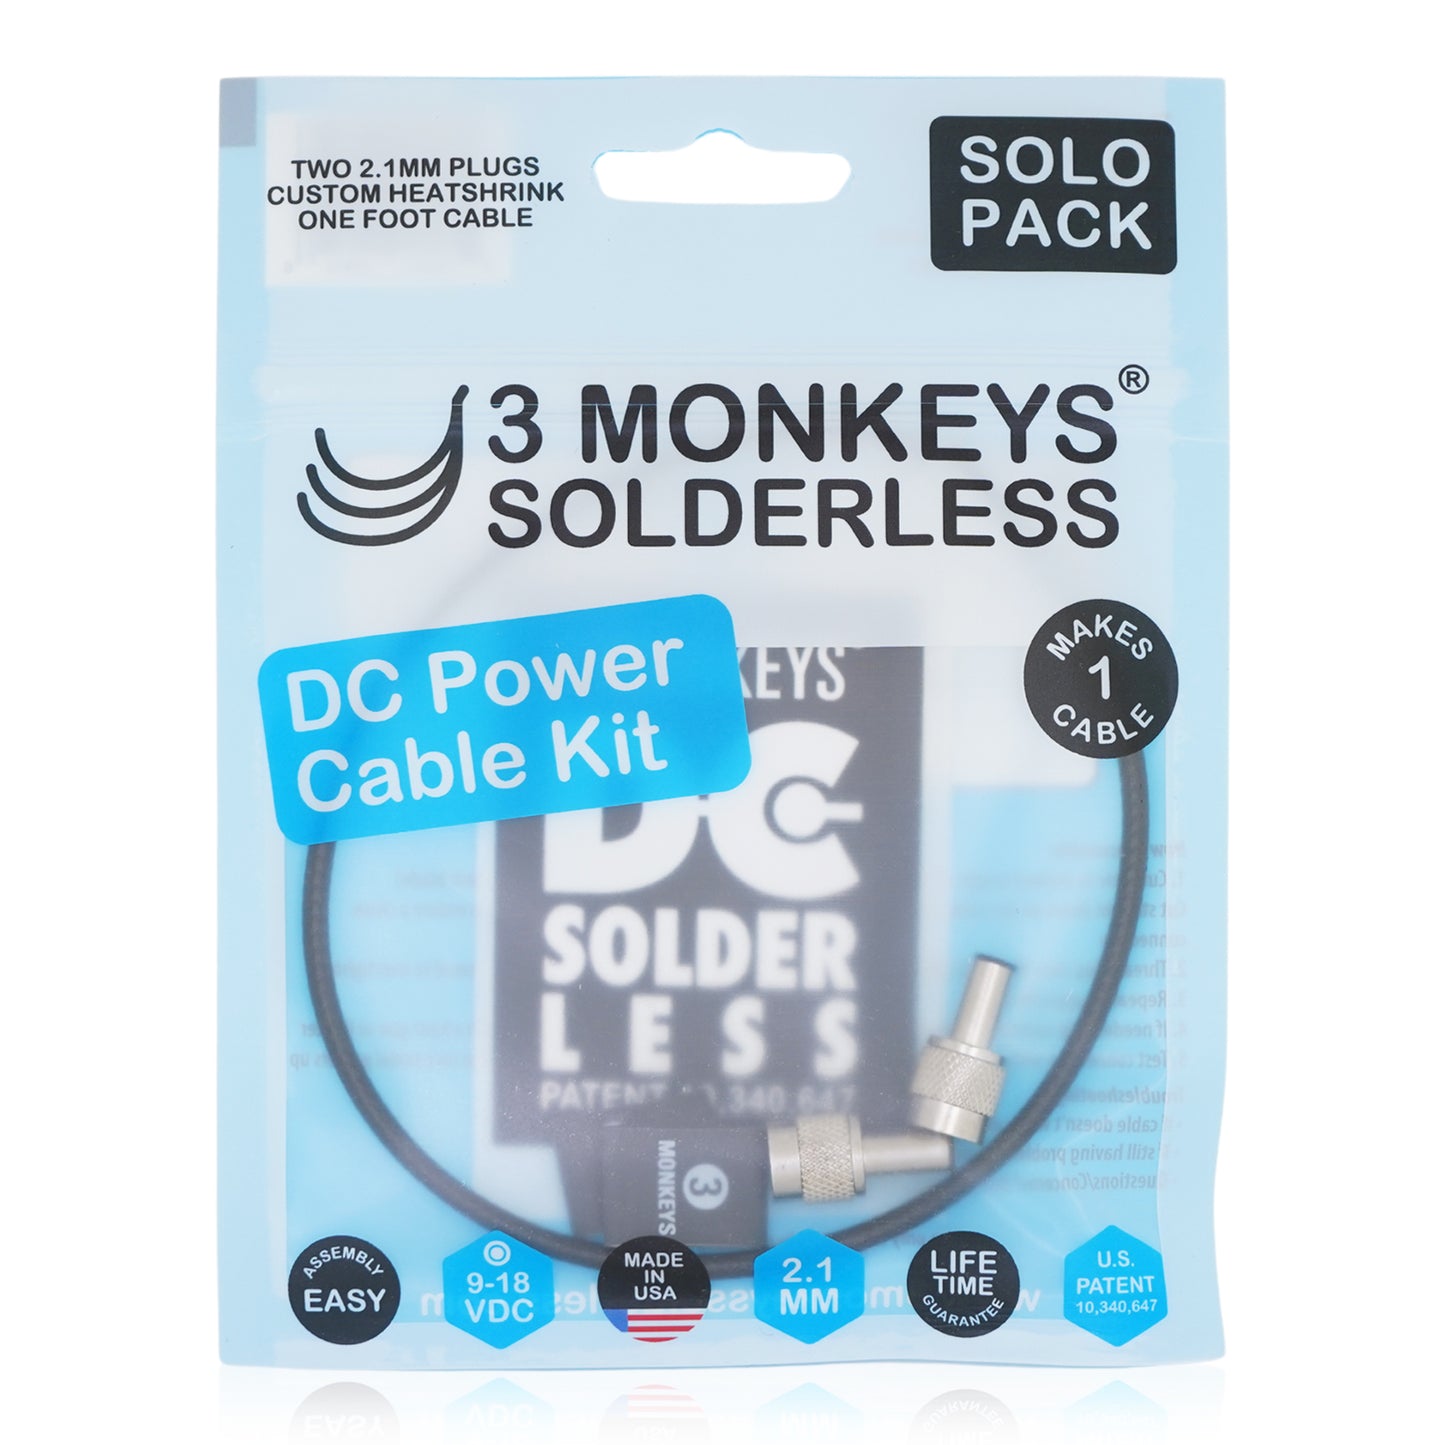 3 Monkeys Solderless/DC SOLDERLESS SOLO PACK